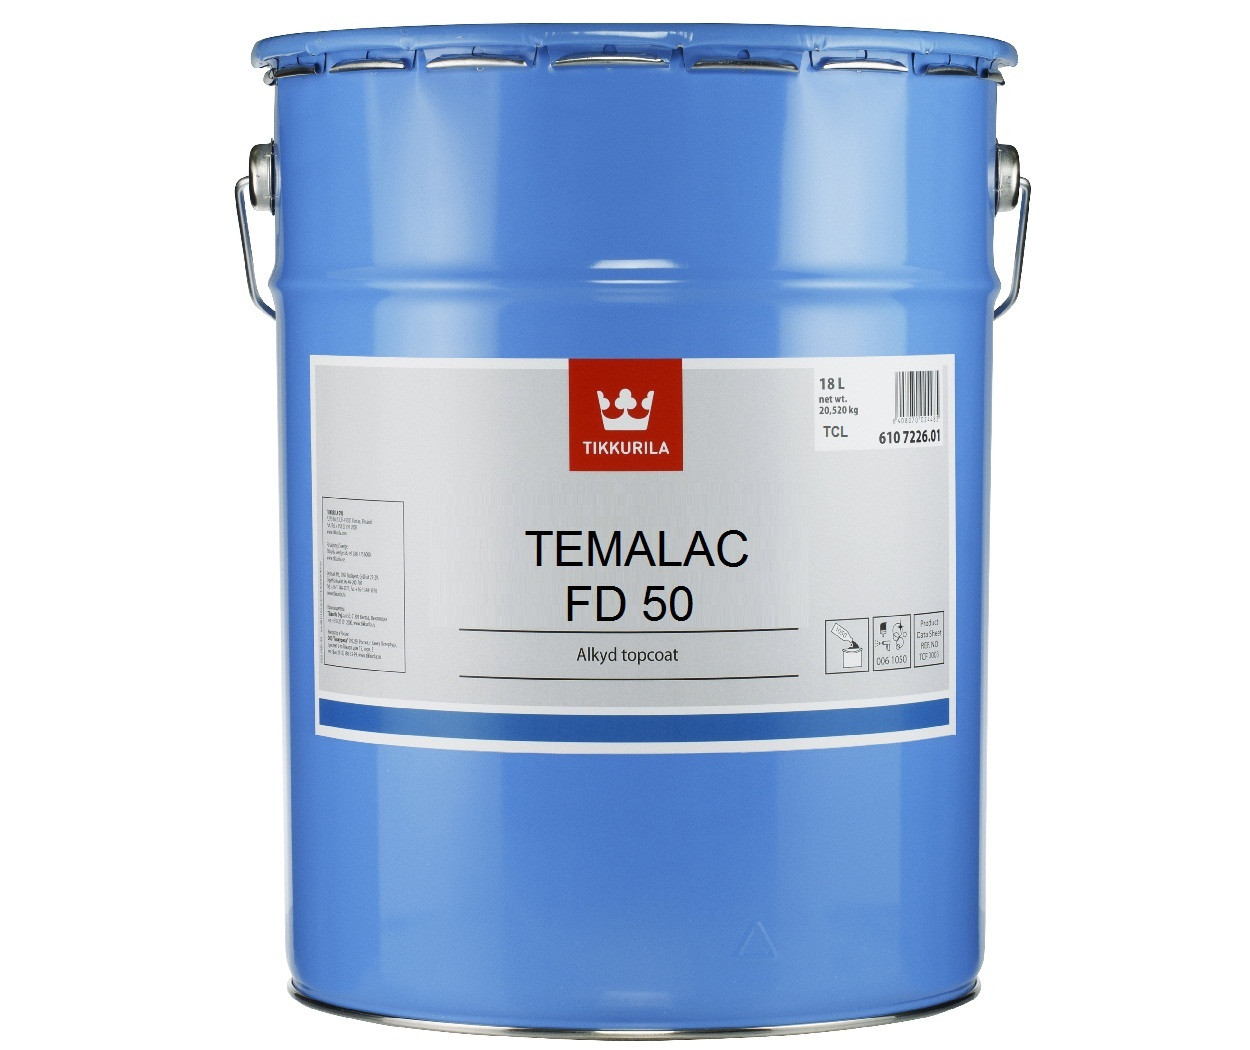 Емаль алкідна TIKKURILA TEMALAC FD 50 антикорозійна, TCL-транспарентний, 18 л